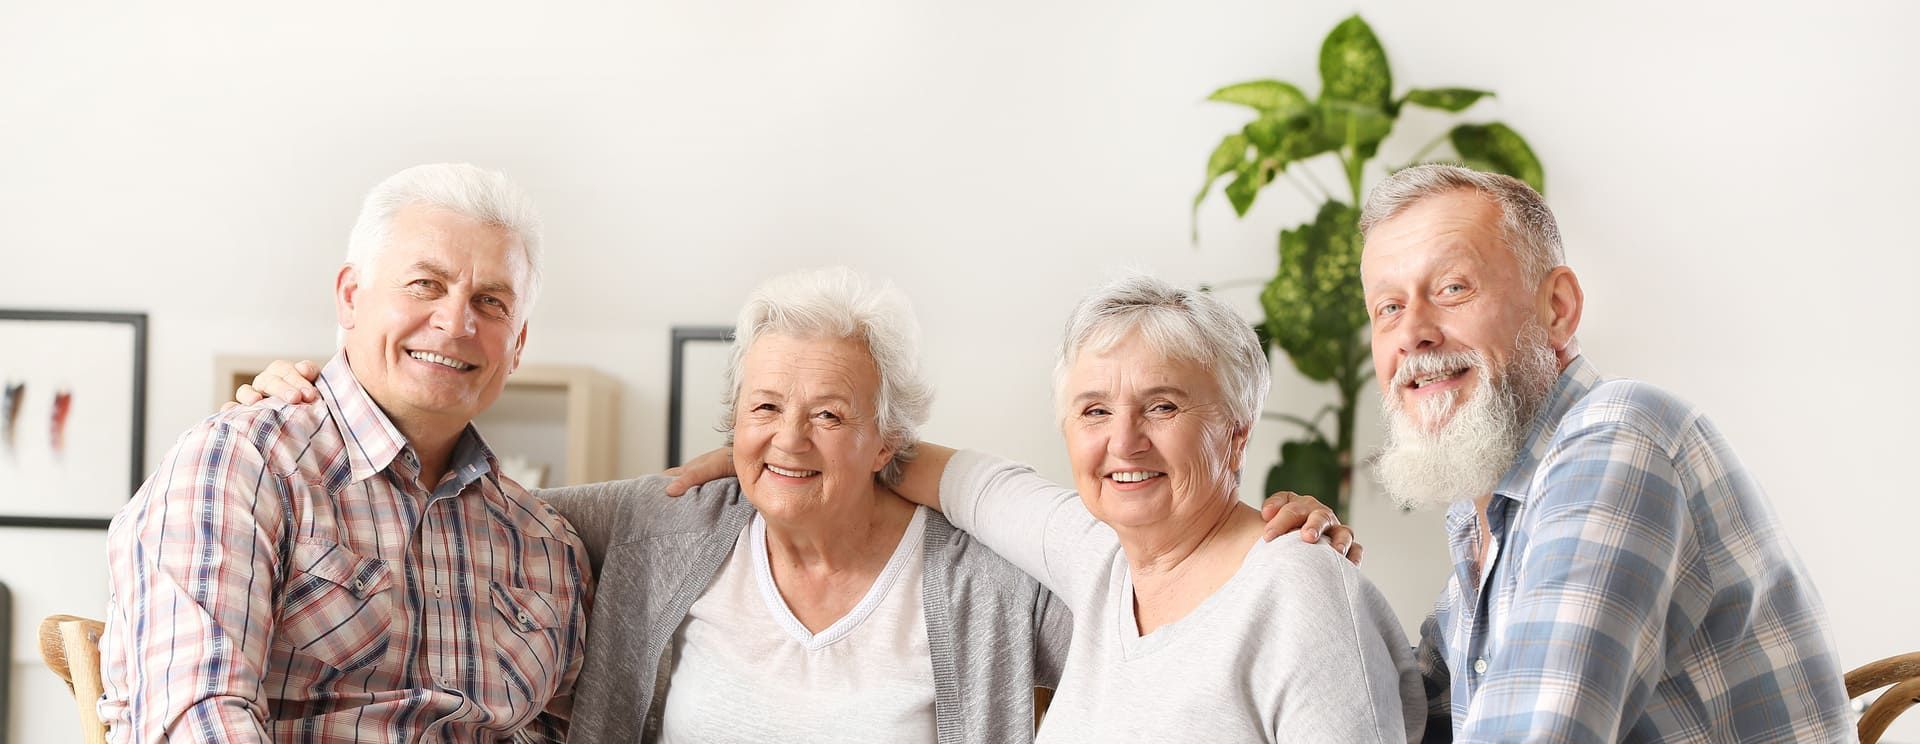 Vier ältere Menschen posieren für ein Foto und lächeln | St. Brigida Seniorenzentrum